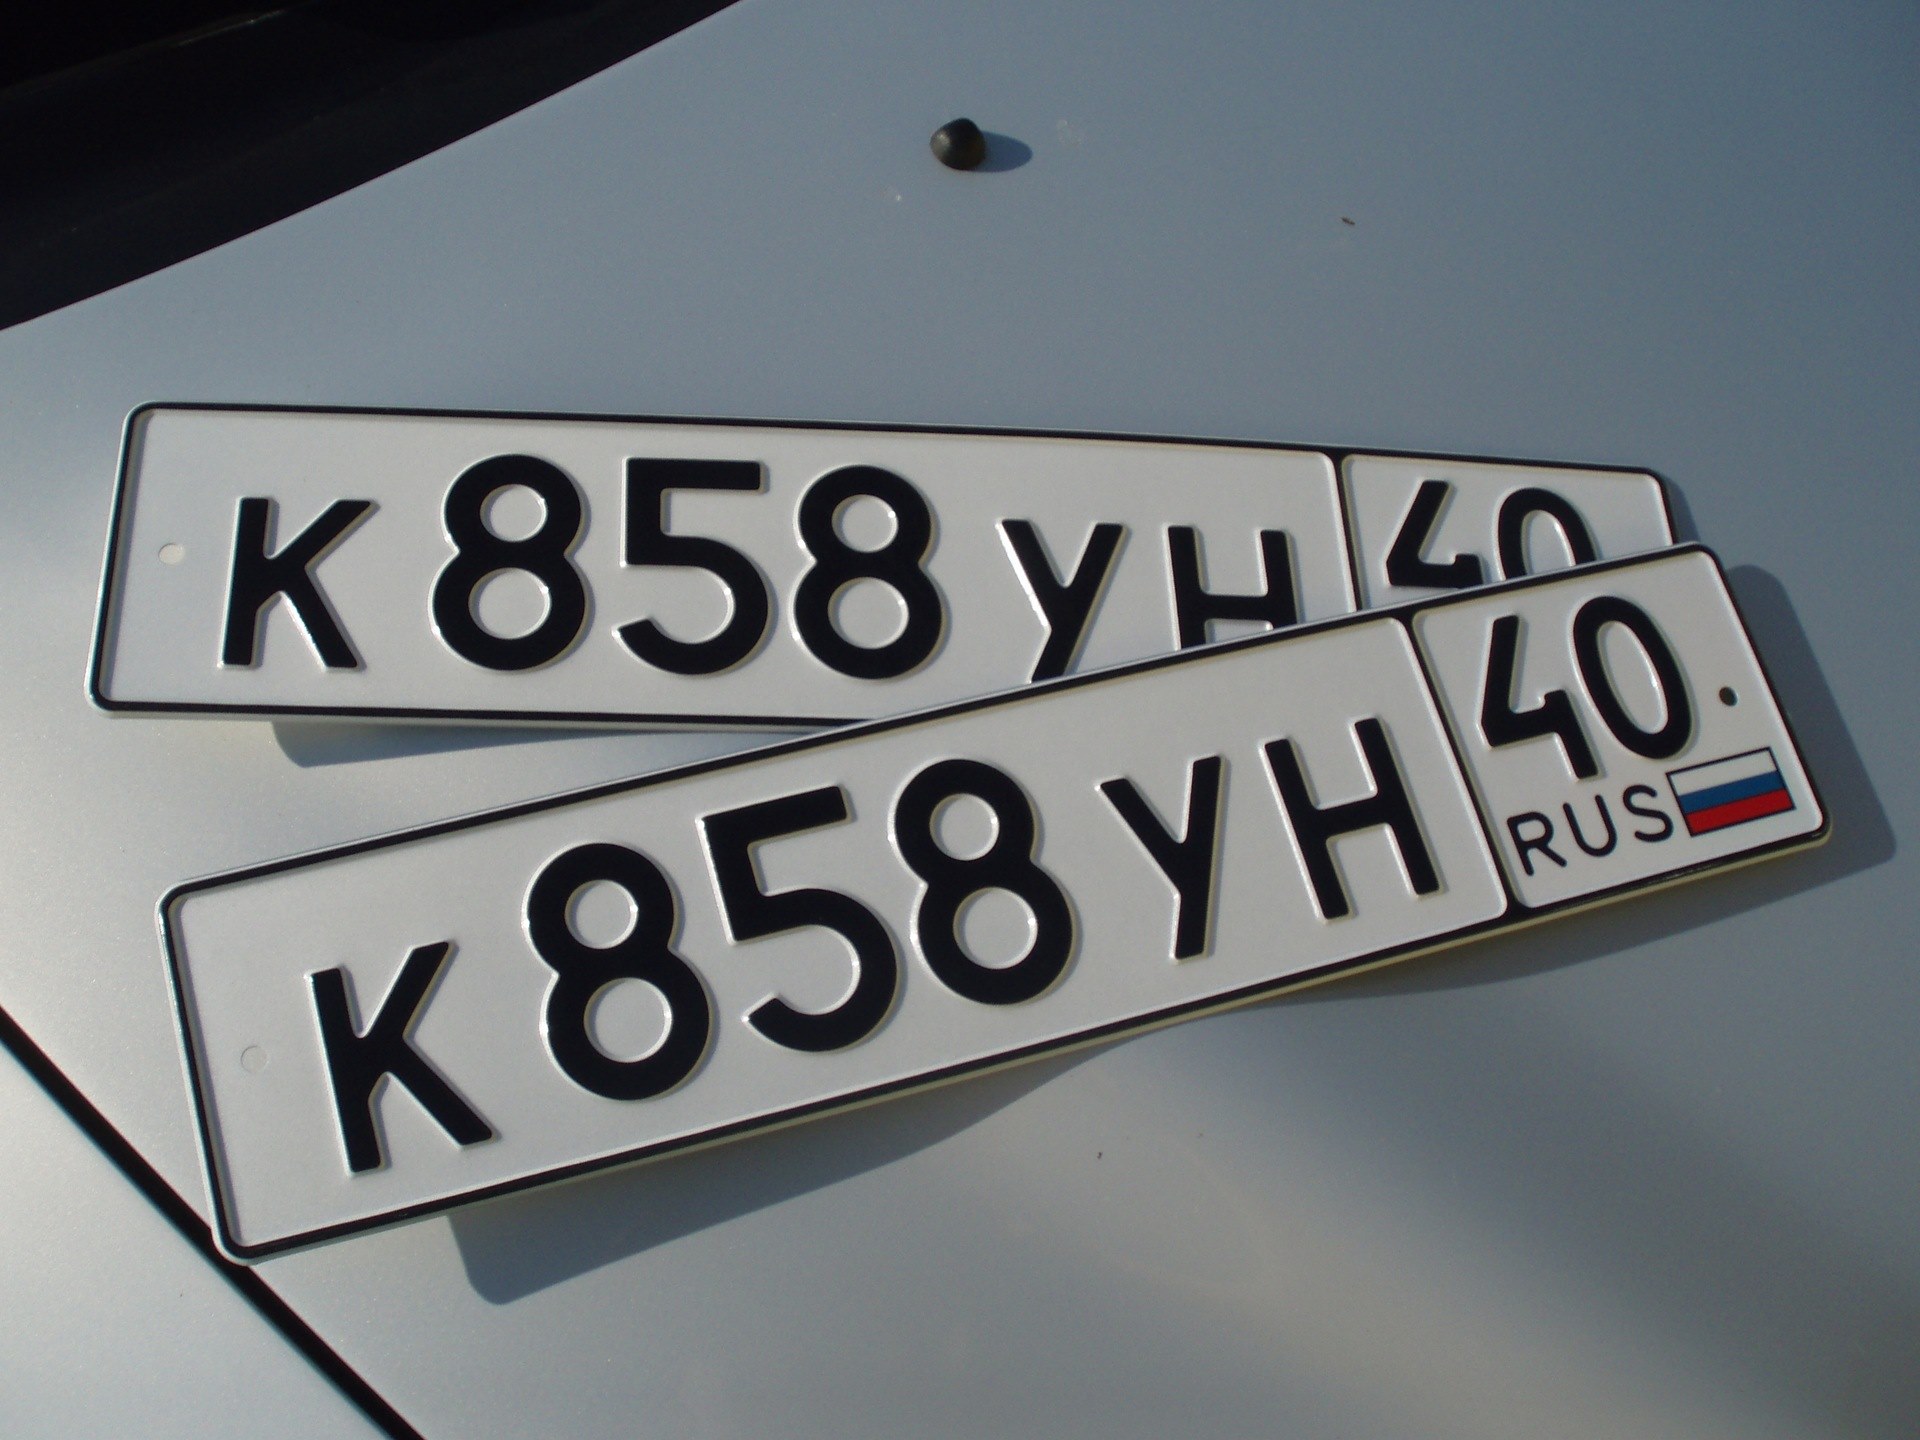 Госномер это. Номер автомобиля. Автомобильный номерной знак. Гос номер автомобиля. Российские автомобильные номера.